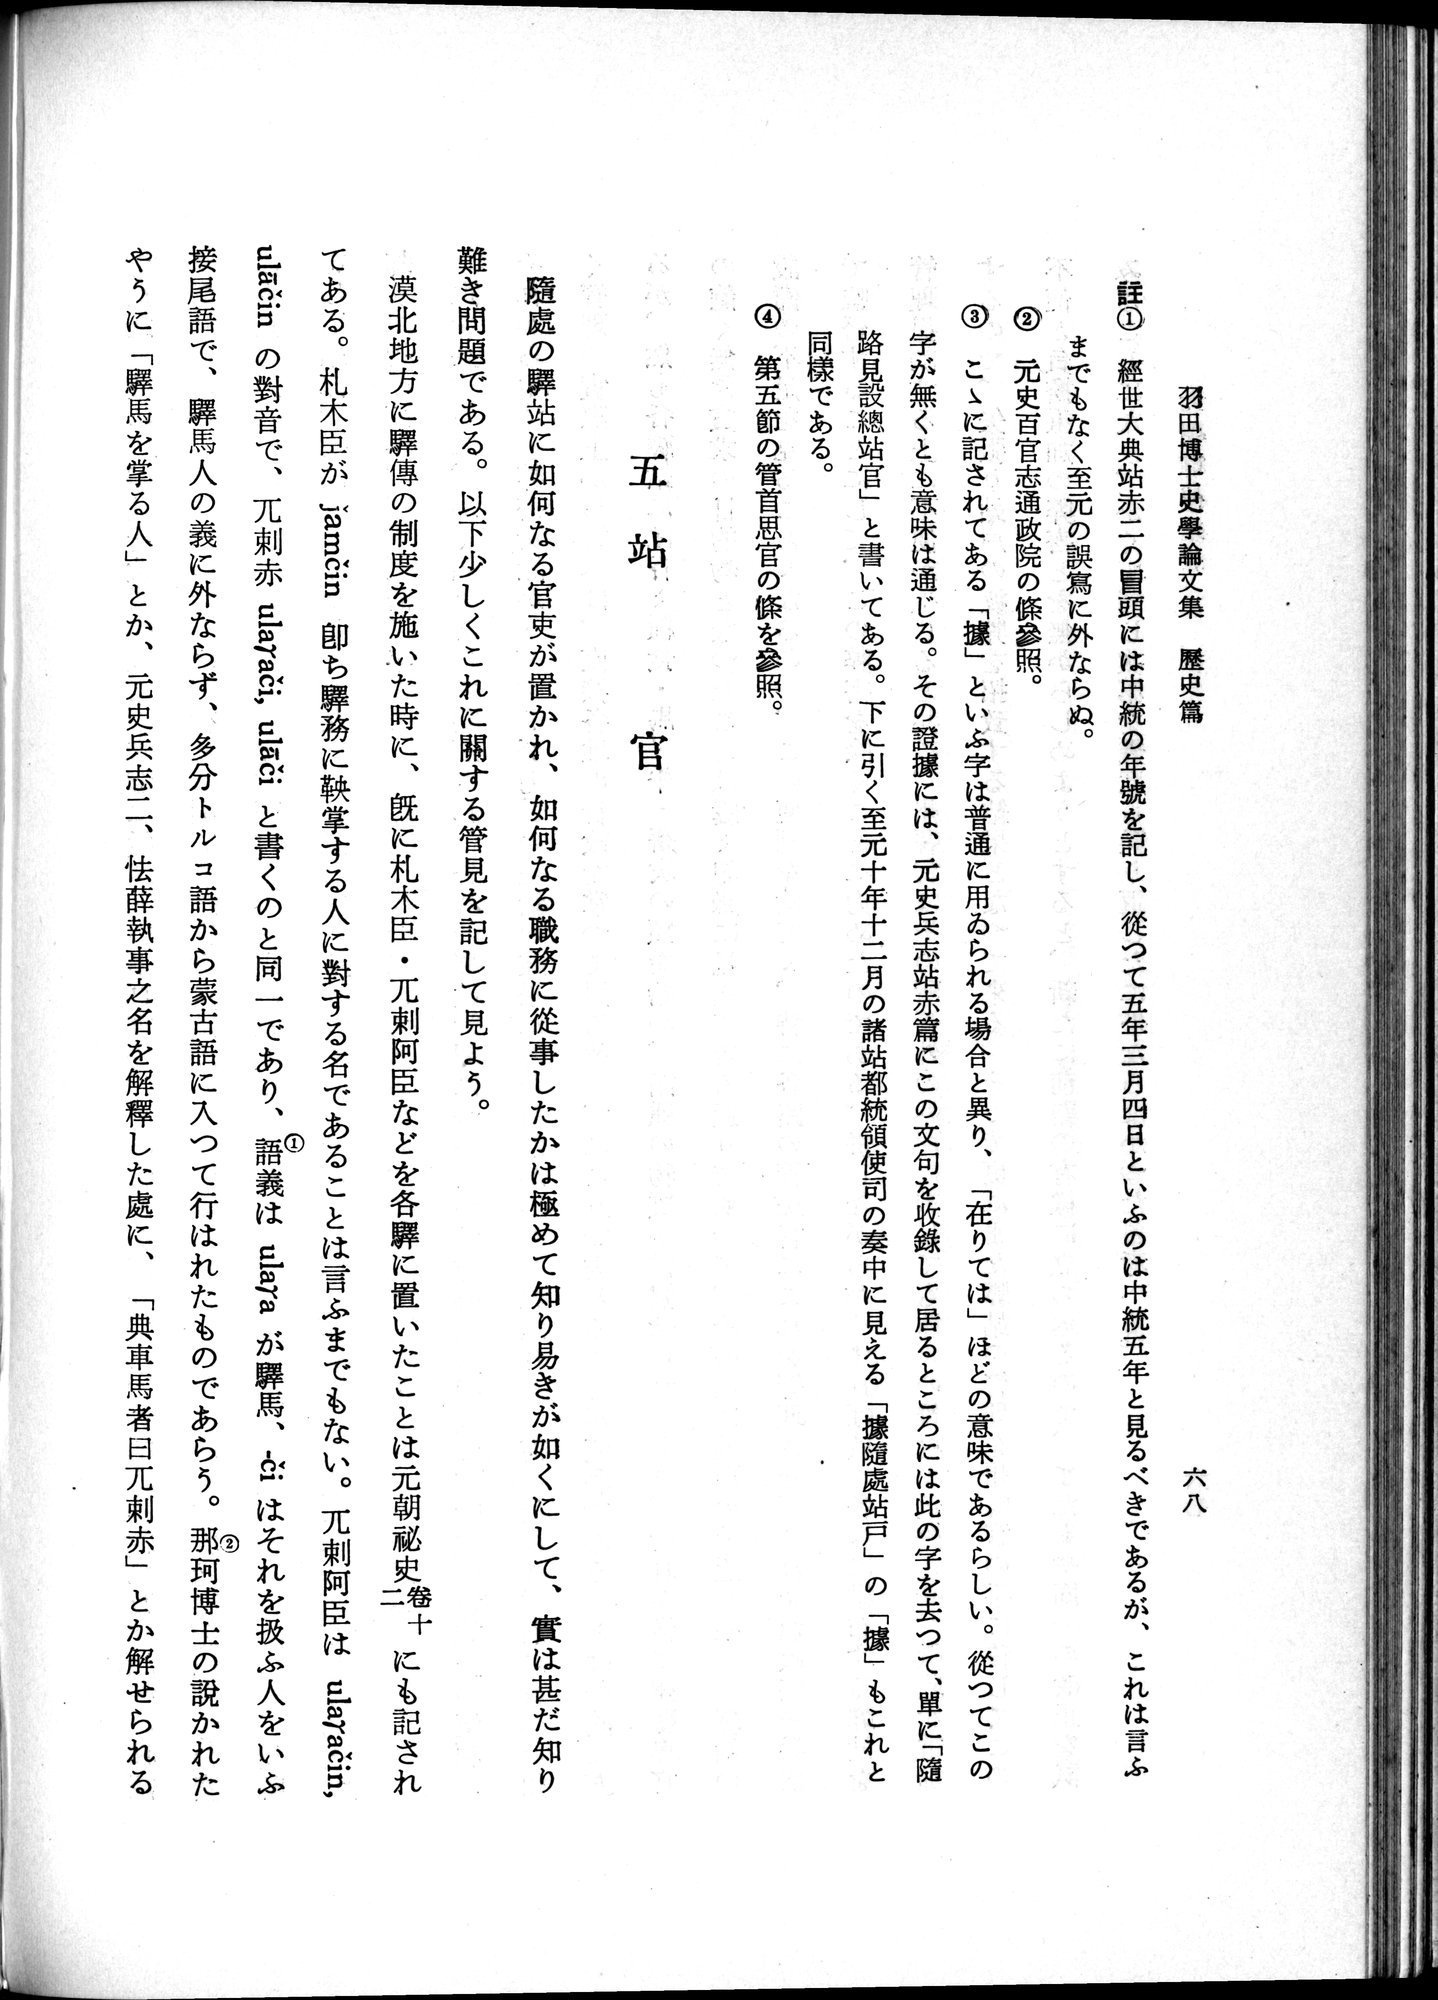 羽田博士史学論文集 : vol.1 / Page 106 (Grayscale High Resolution Image)